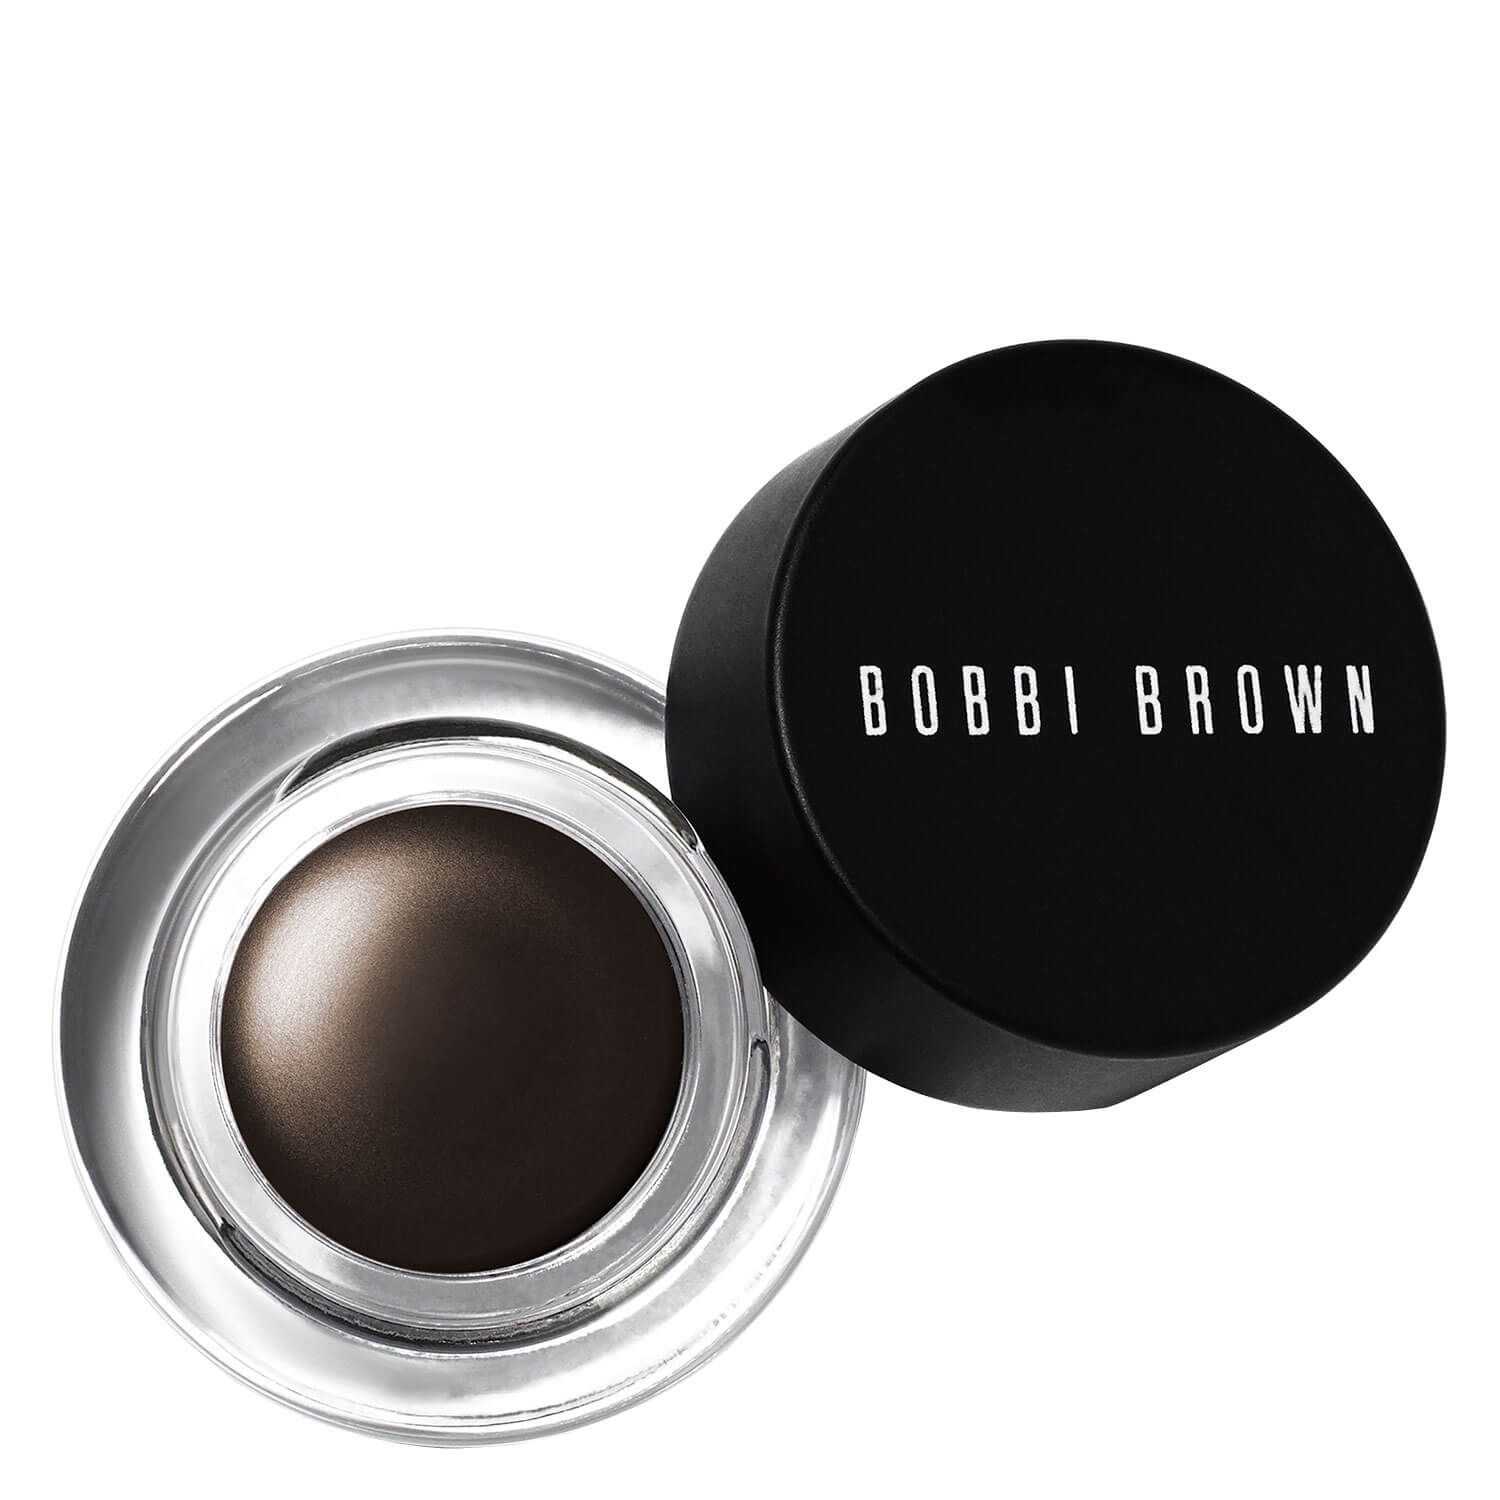 Product image from BB Eyeliner - Long-Wear Gel Eyeliner Espresso Ink